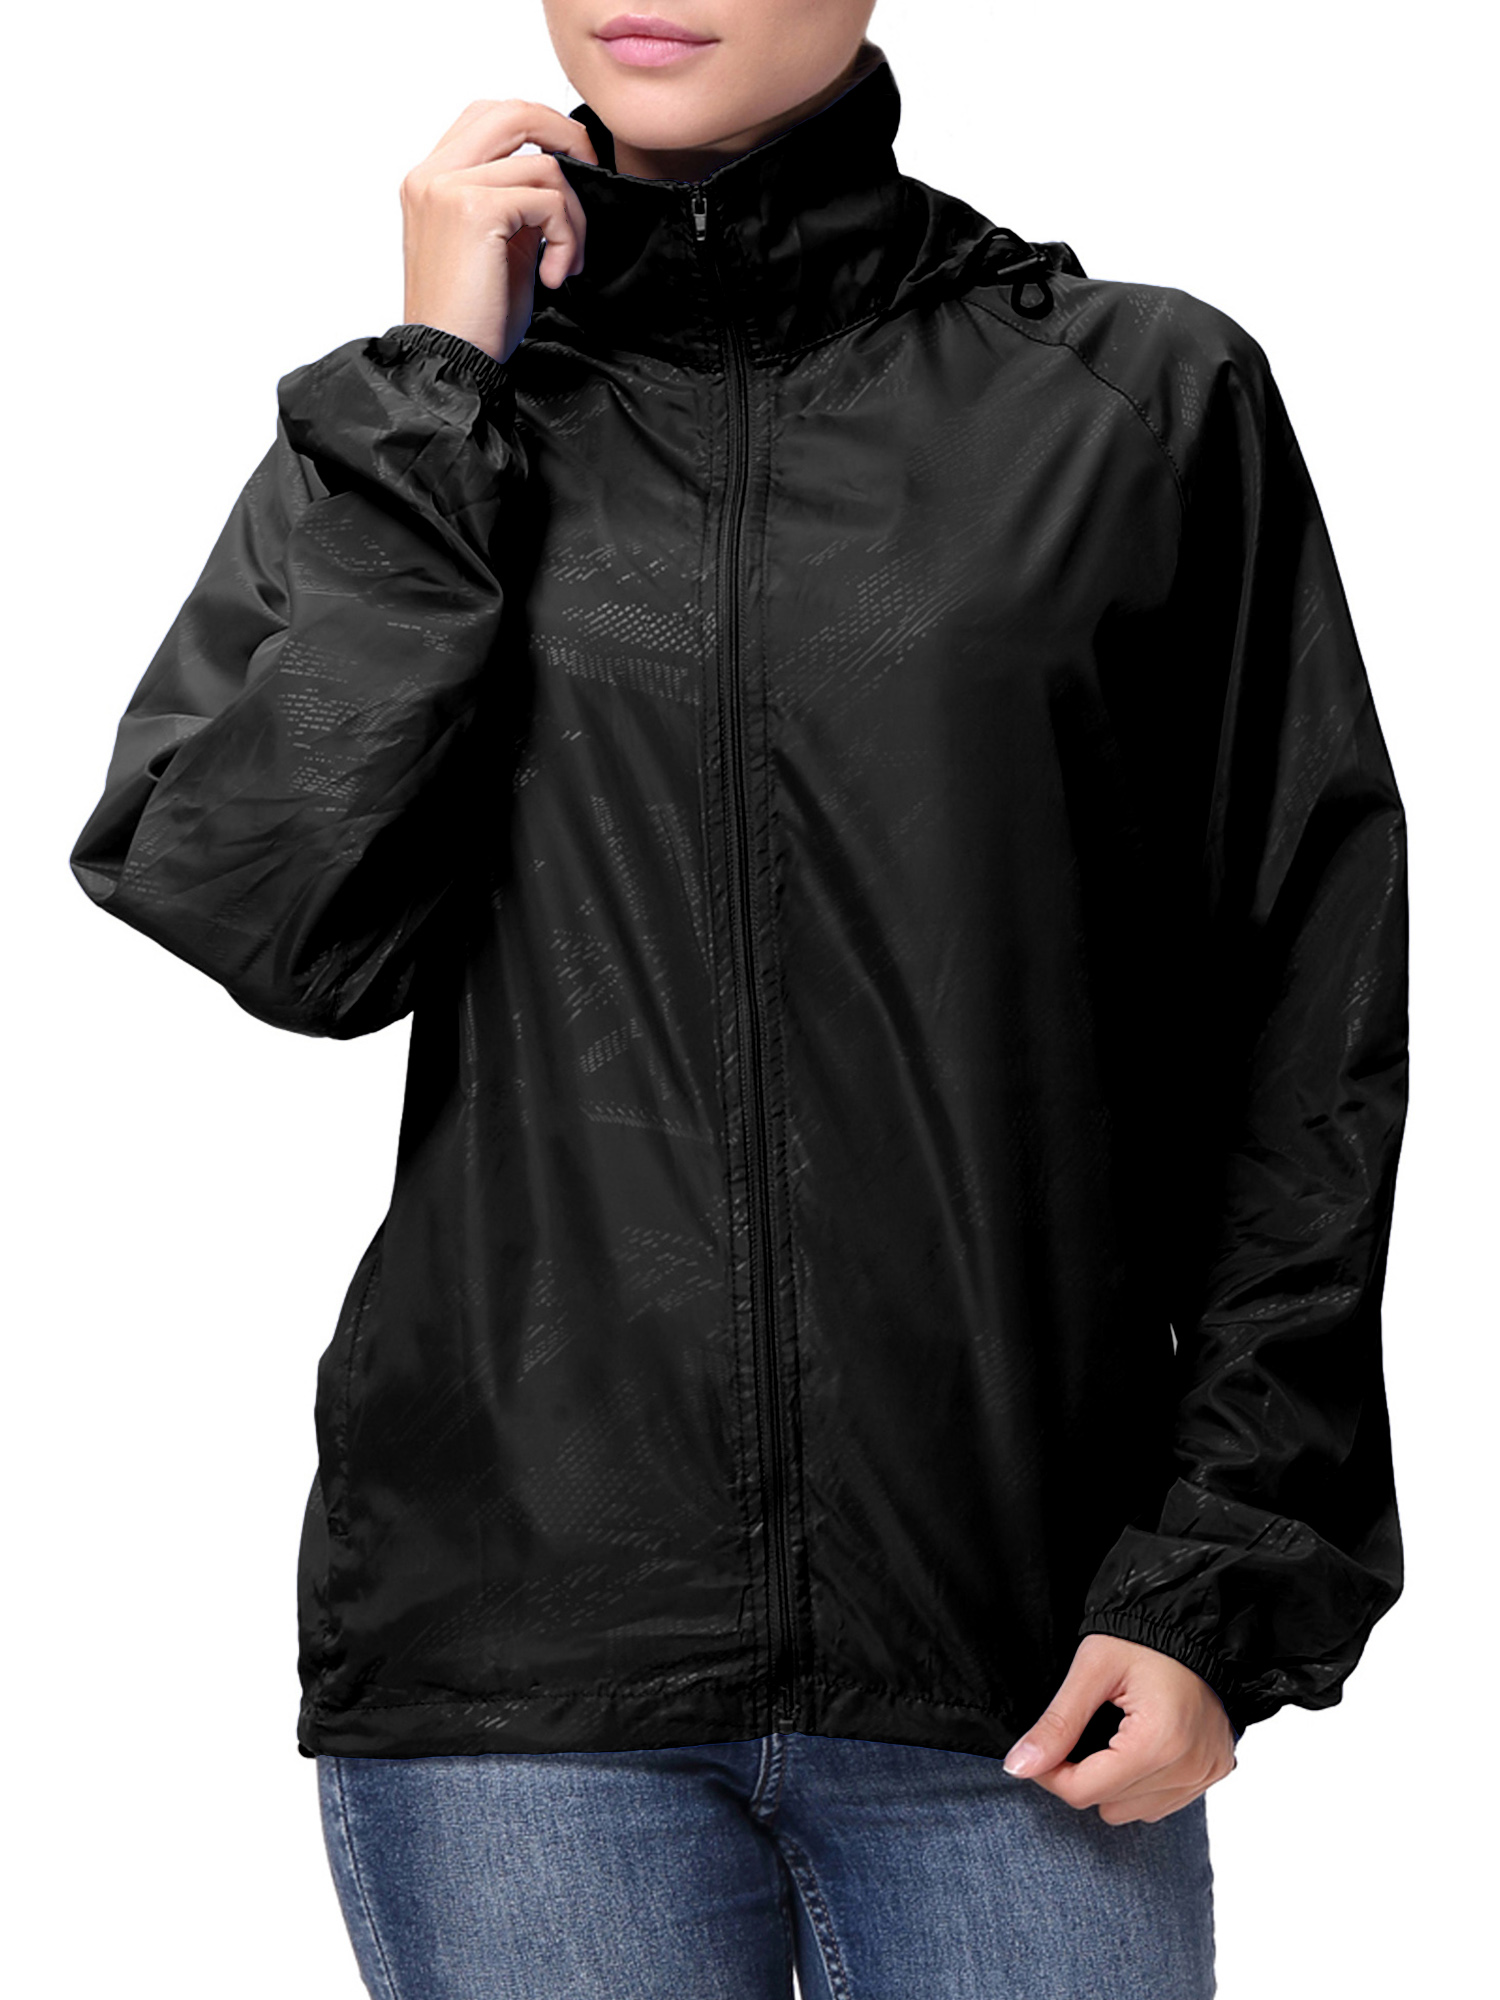 LELINTA Women Nylon Windbreaker Jacket Sport Casual Lightweight Zipper Hooded Outdoor Jacket, Black - image 4 of 9